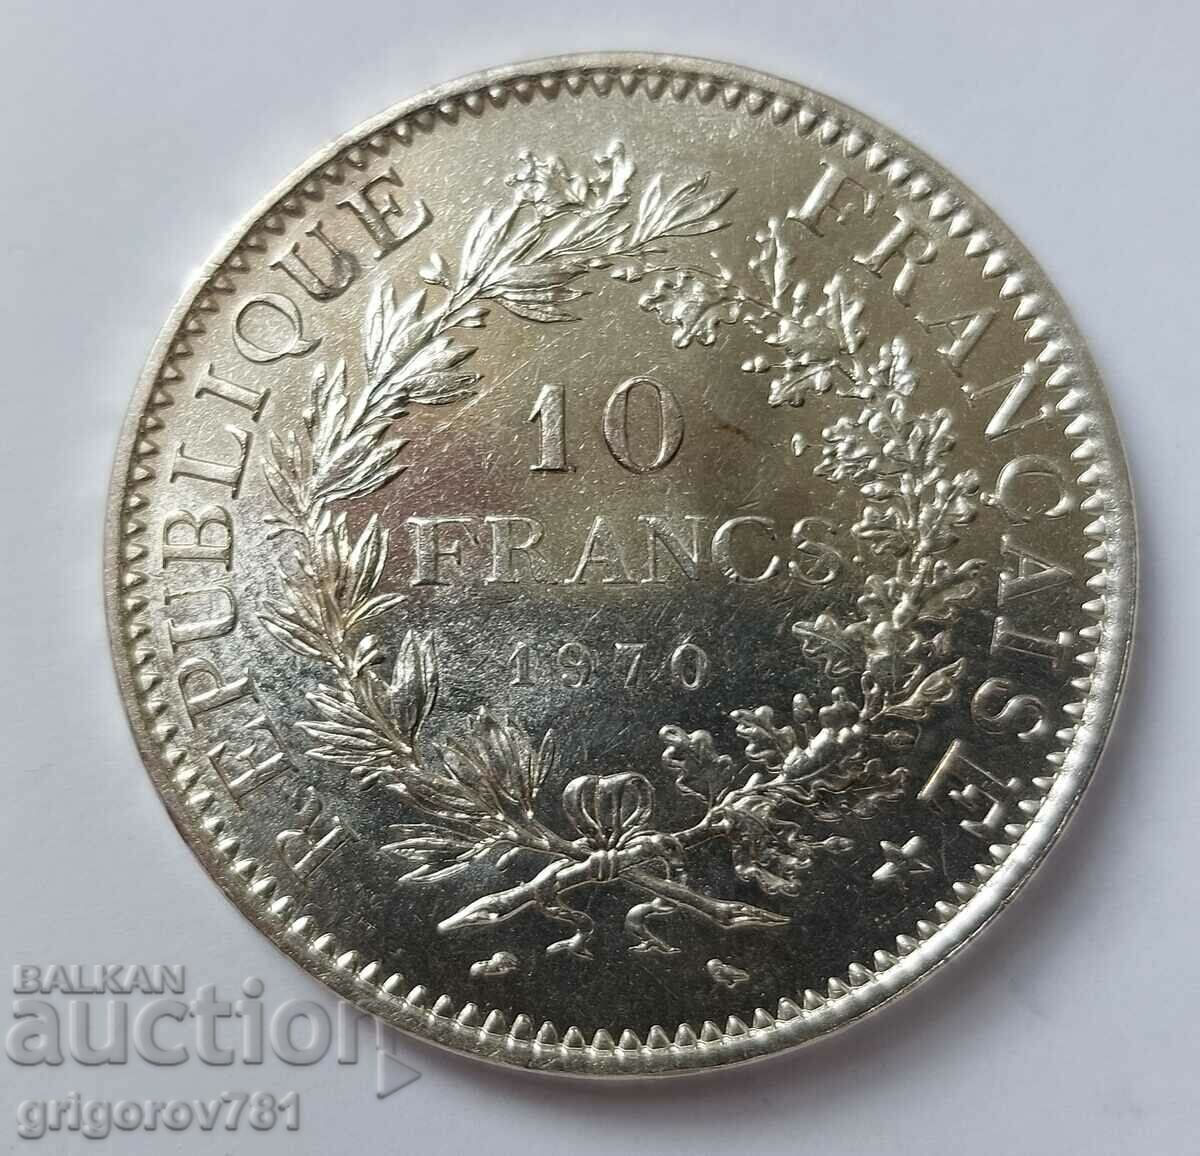 10 Φράγκα Ασήμι Γαλλία 1970 - Ασημένιο νόμισμα #68